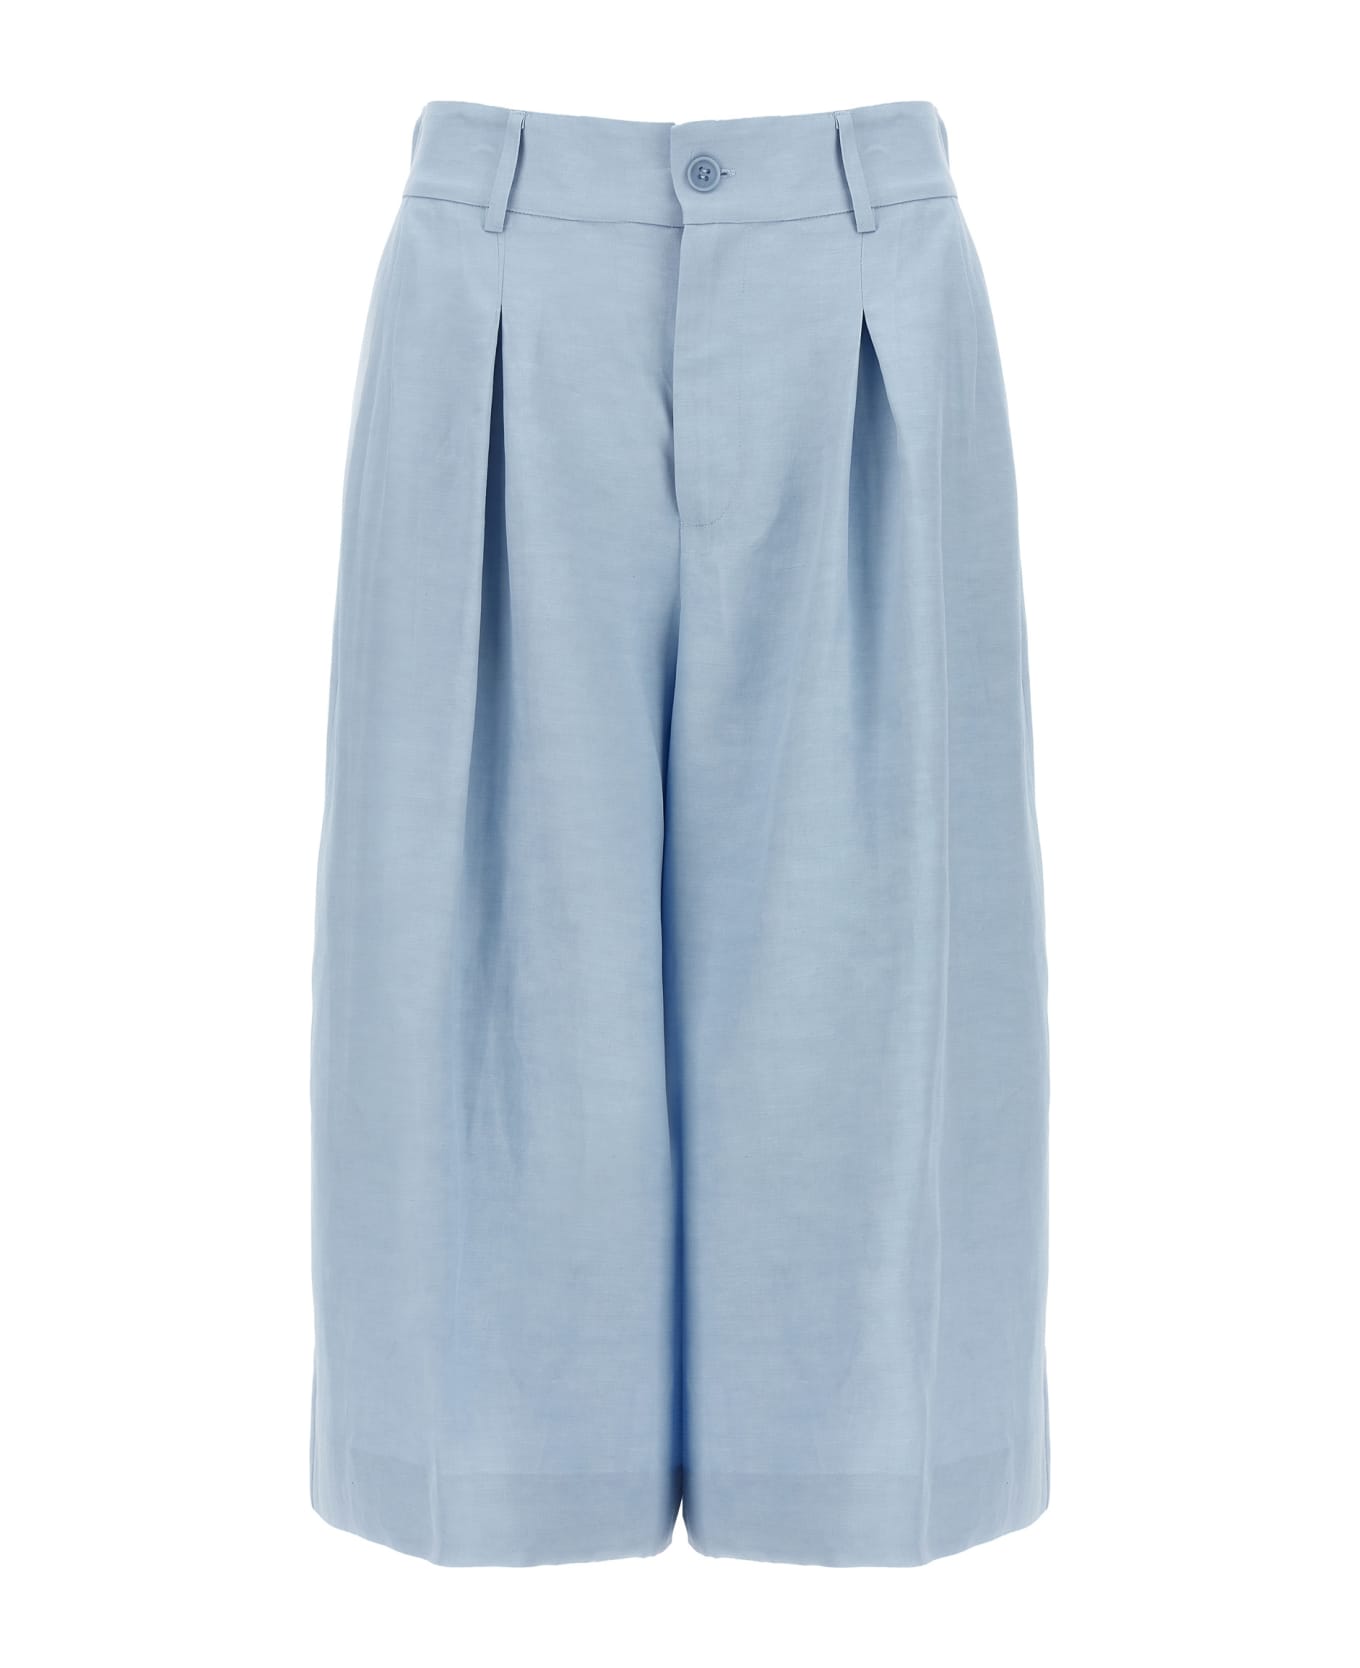 Parosh 'raisa' Bermuda Shorts - Light Blue